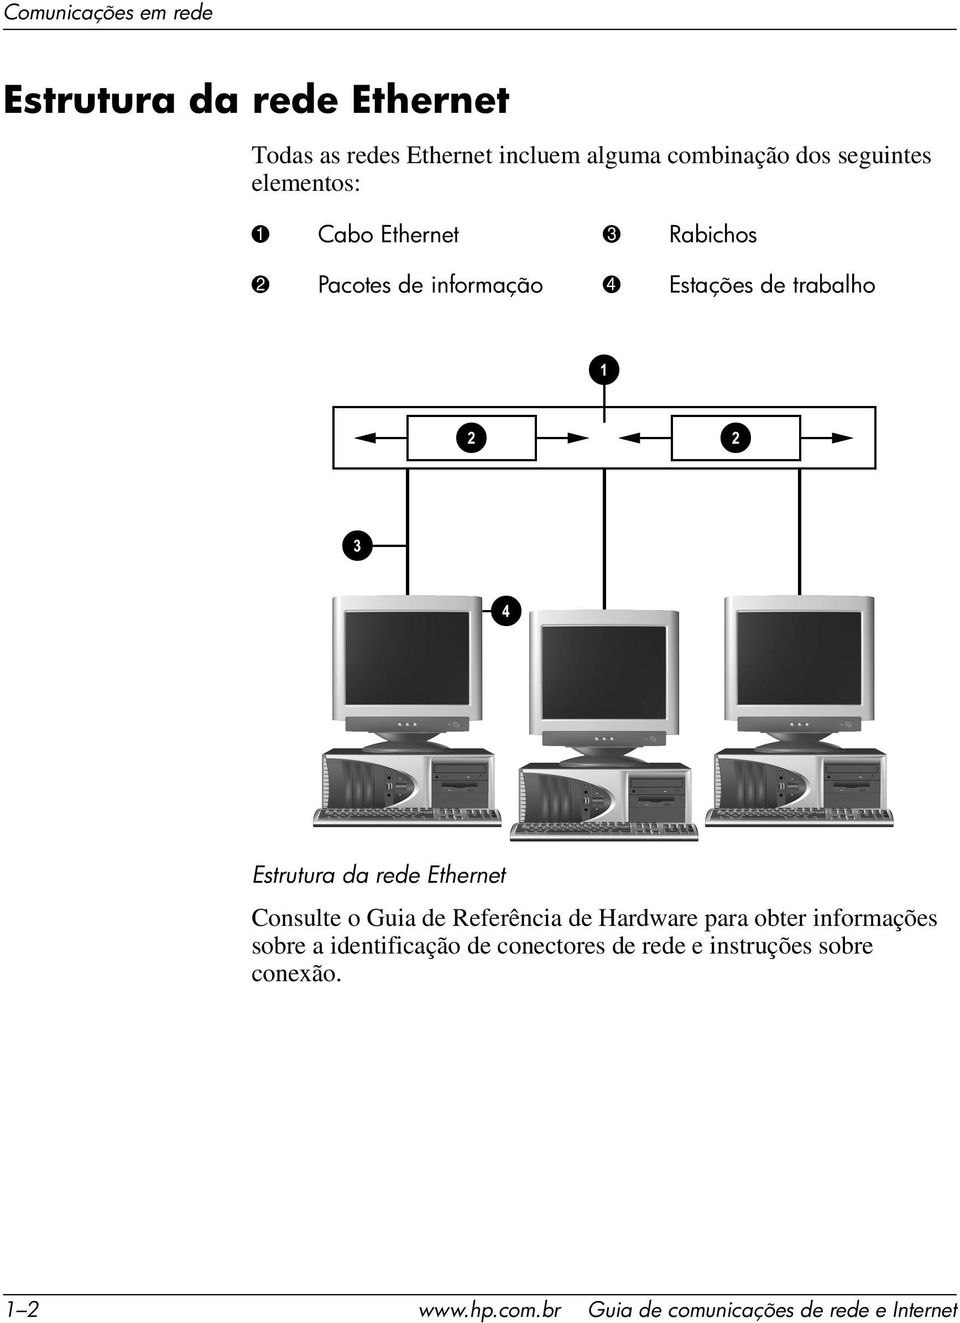 Estrutura da rede Ethernet ConsulteoGuiadeReferênciadeHardwareparaobterinformações sobre a